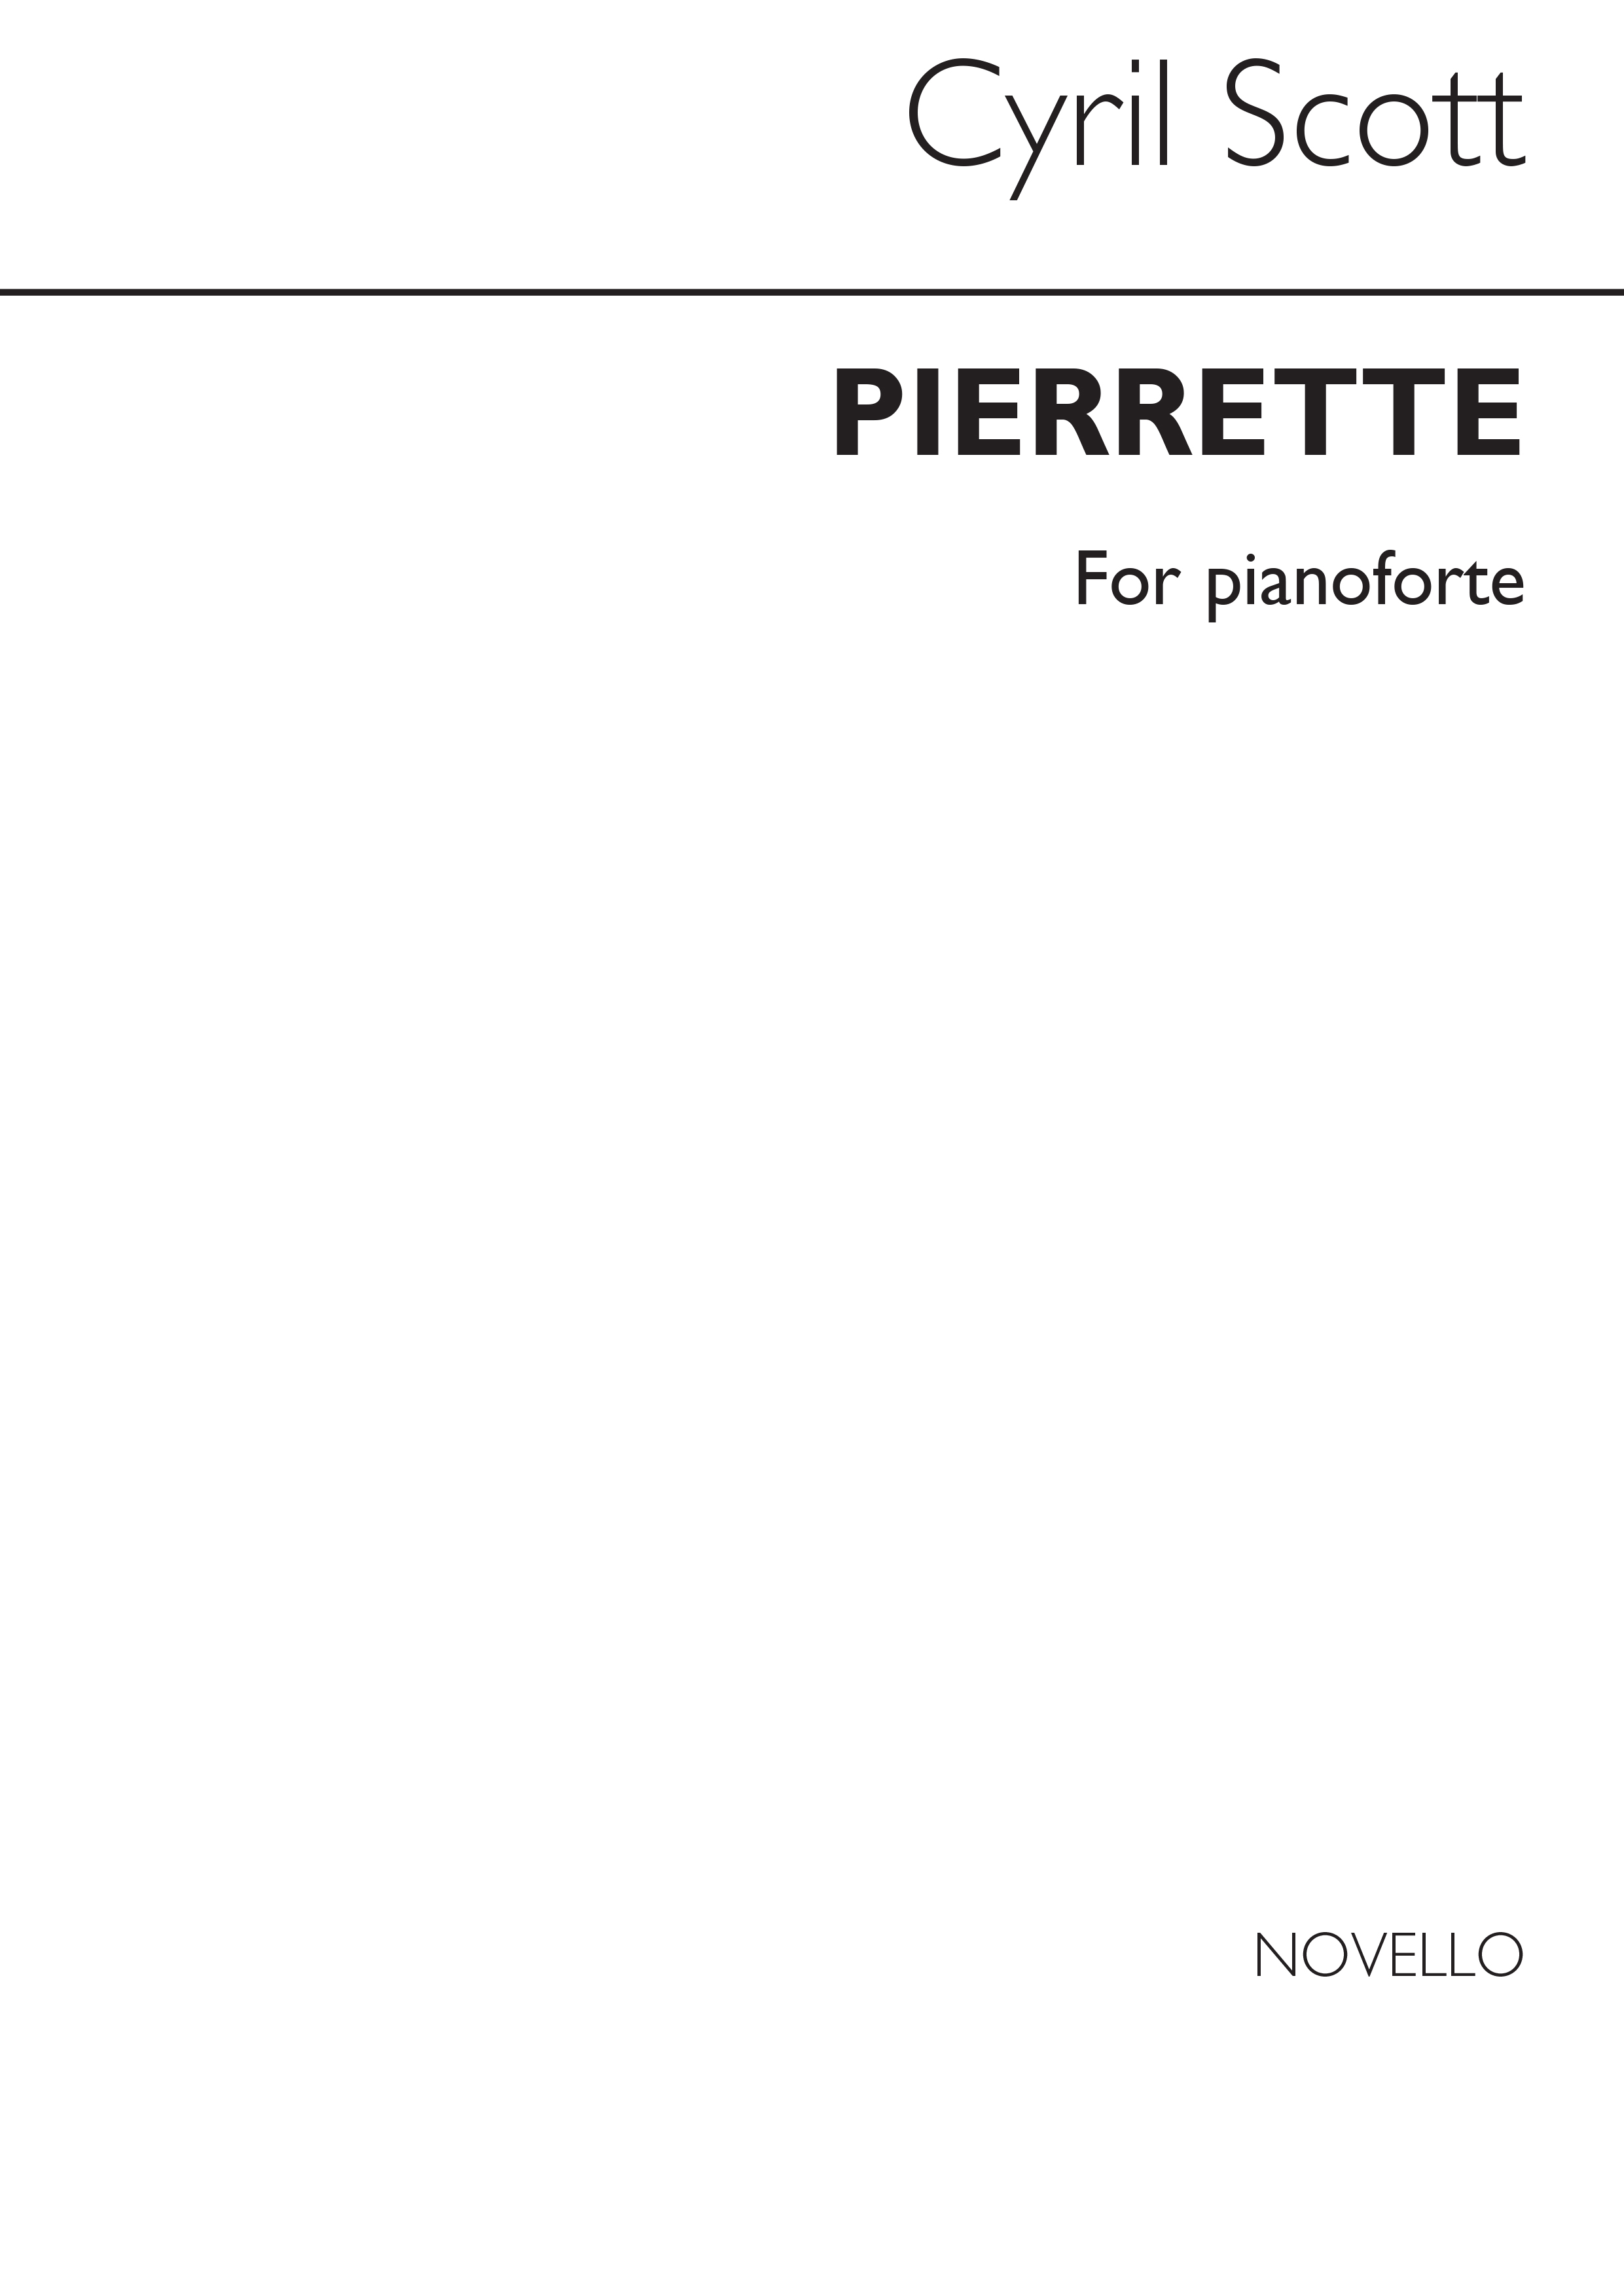 Cyril Scott: Pierrette for Piano